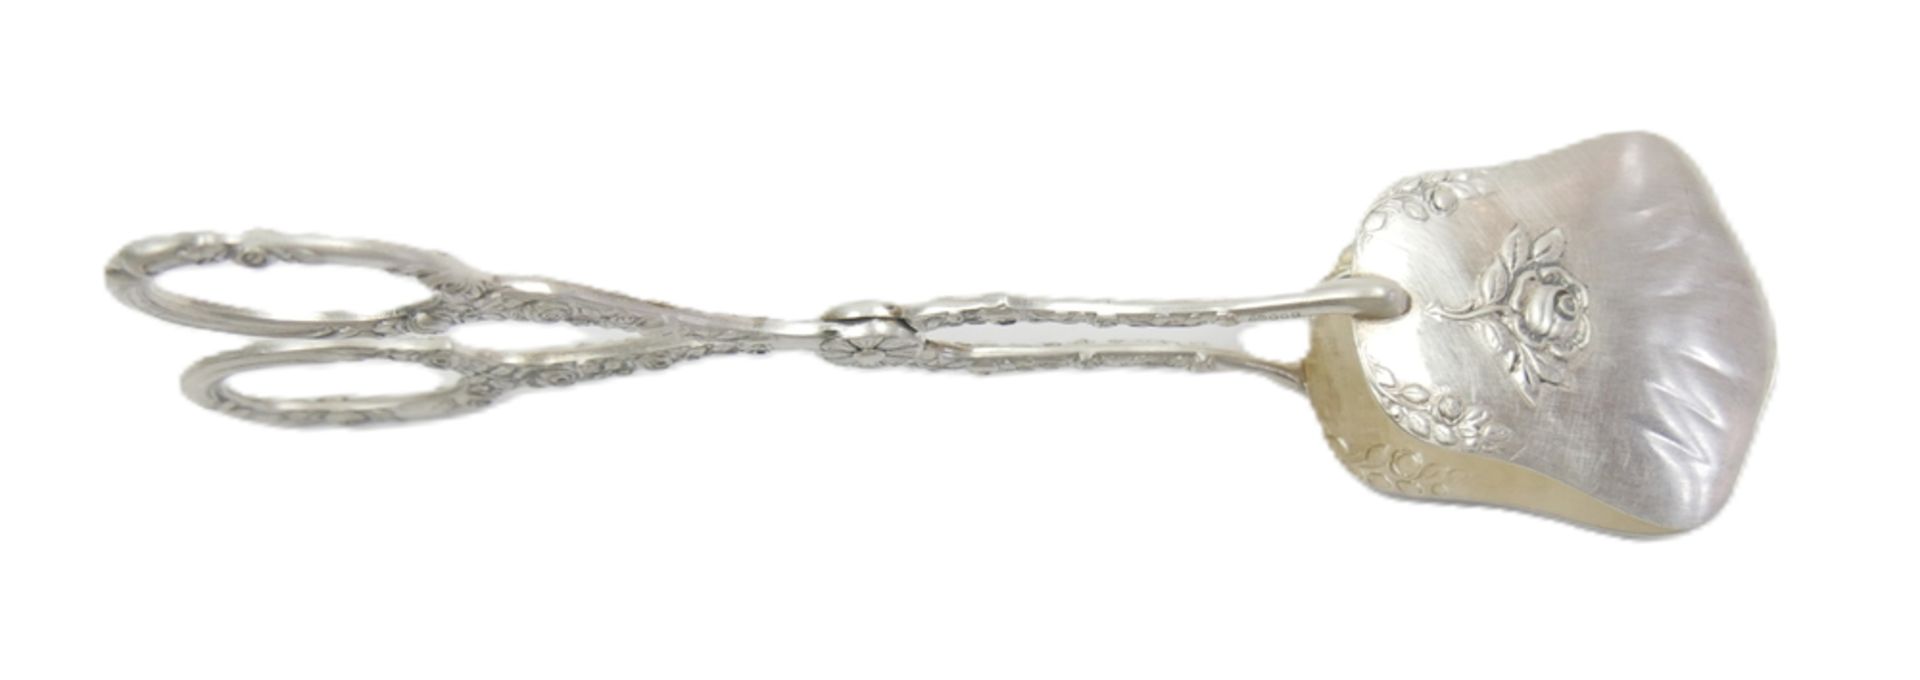 Gebäckzange, 800er Silber gepunzt, Länge ca. 16,5 cm - Image 2 of 2